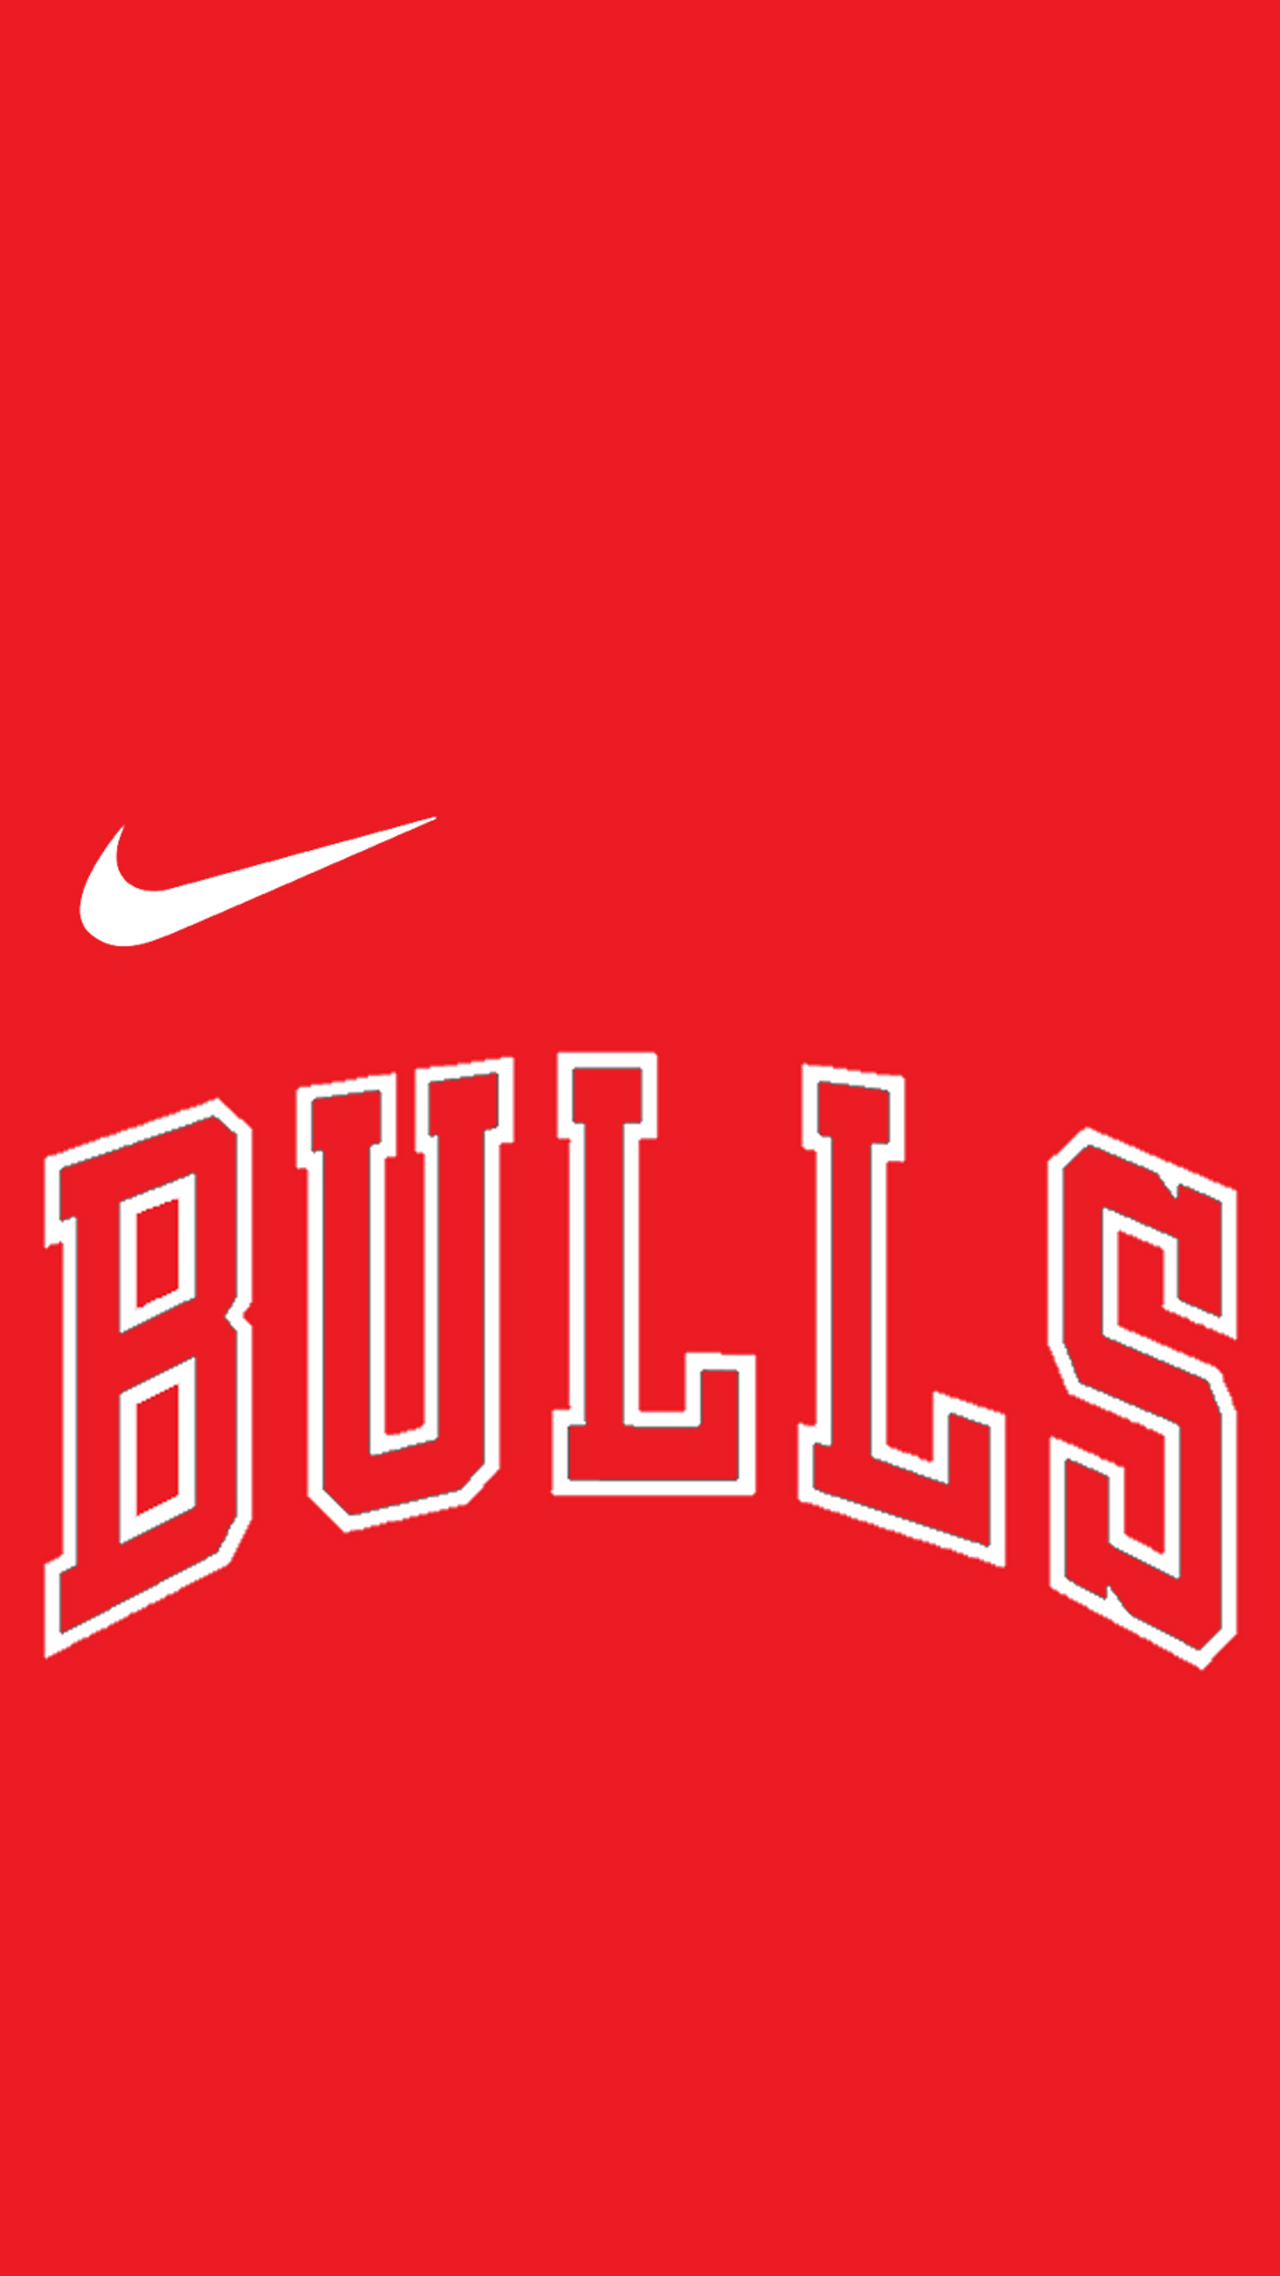 Bulls wallpaper for iPhone  Logo chicago bulls, Bulls wallpaper, Chicago  bulls logo